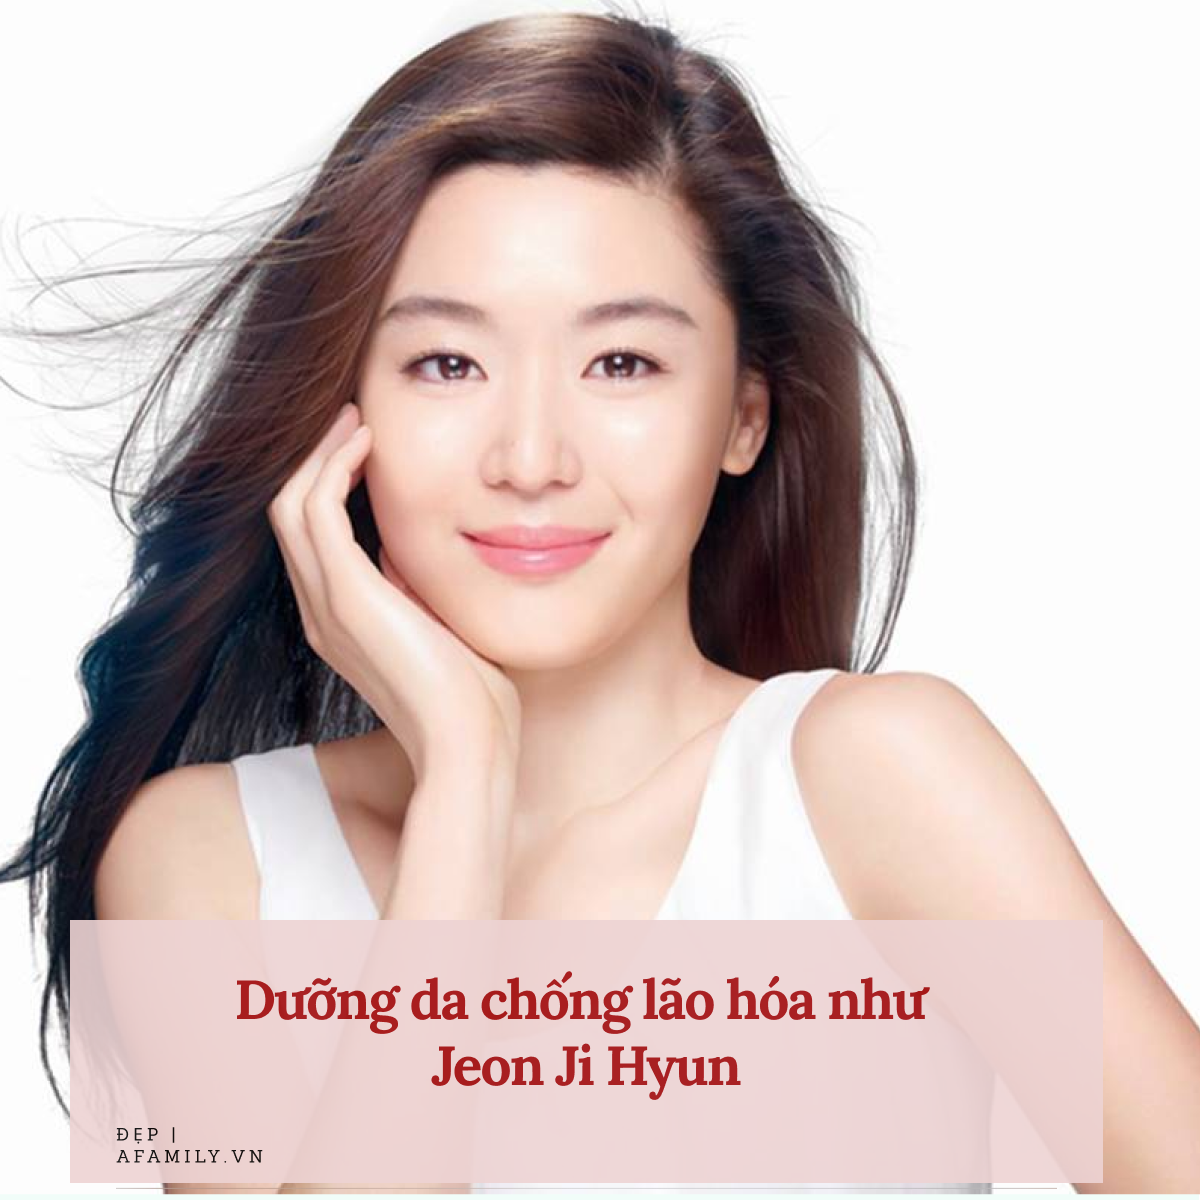 U40 nhưng Jeon Ji Hyun vẫn giữ da dẻ mướt căng, không nếp nhăn nhờ 5 tips skincare này-1